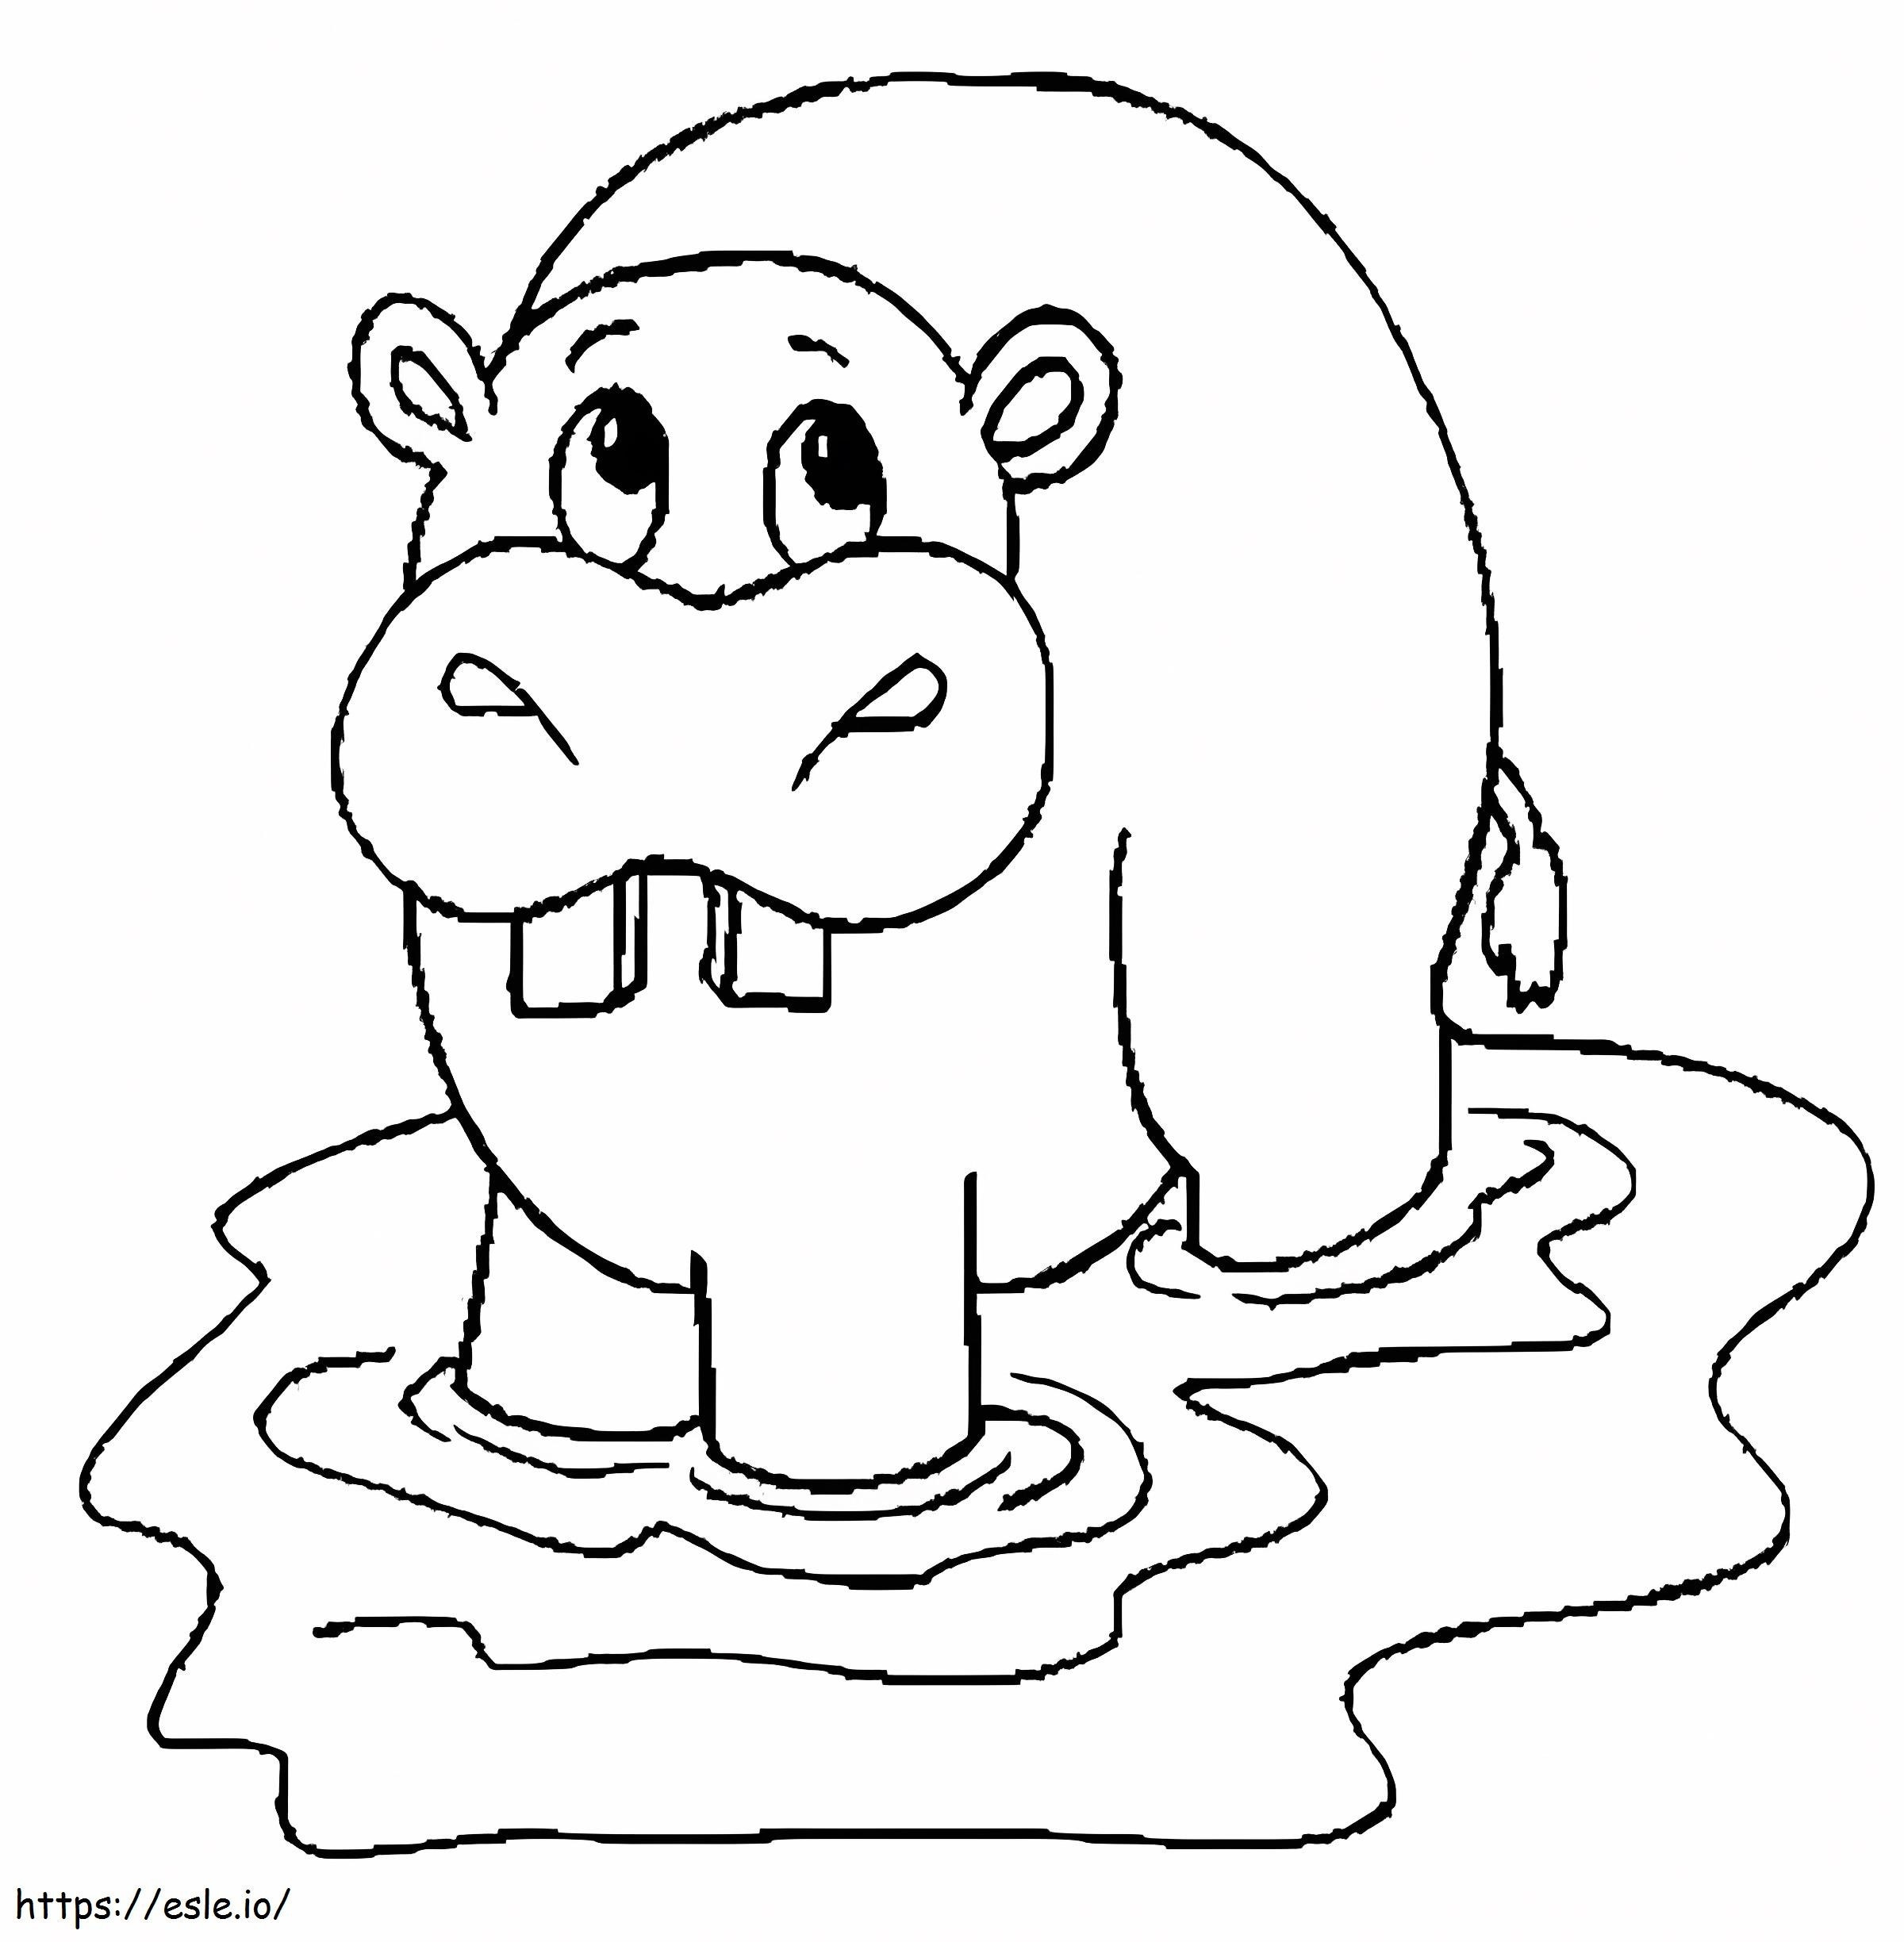 Rysunek hipopotama kolorowanka